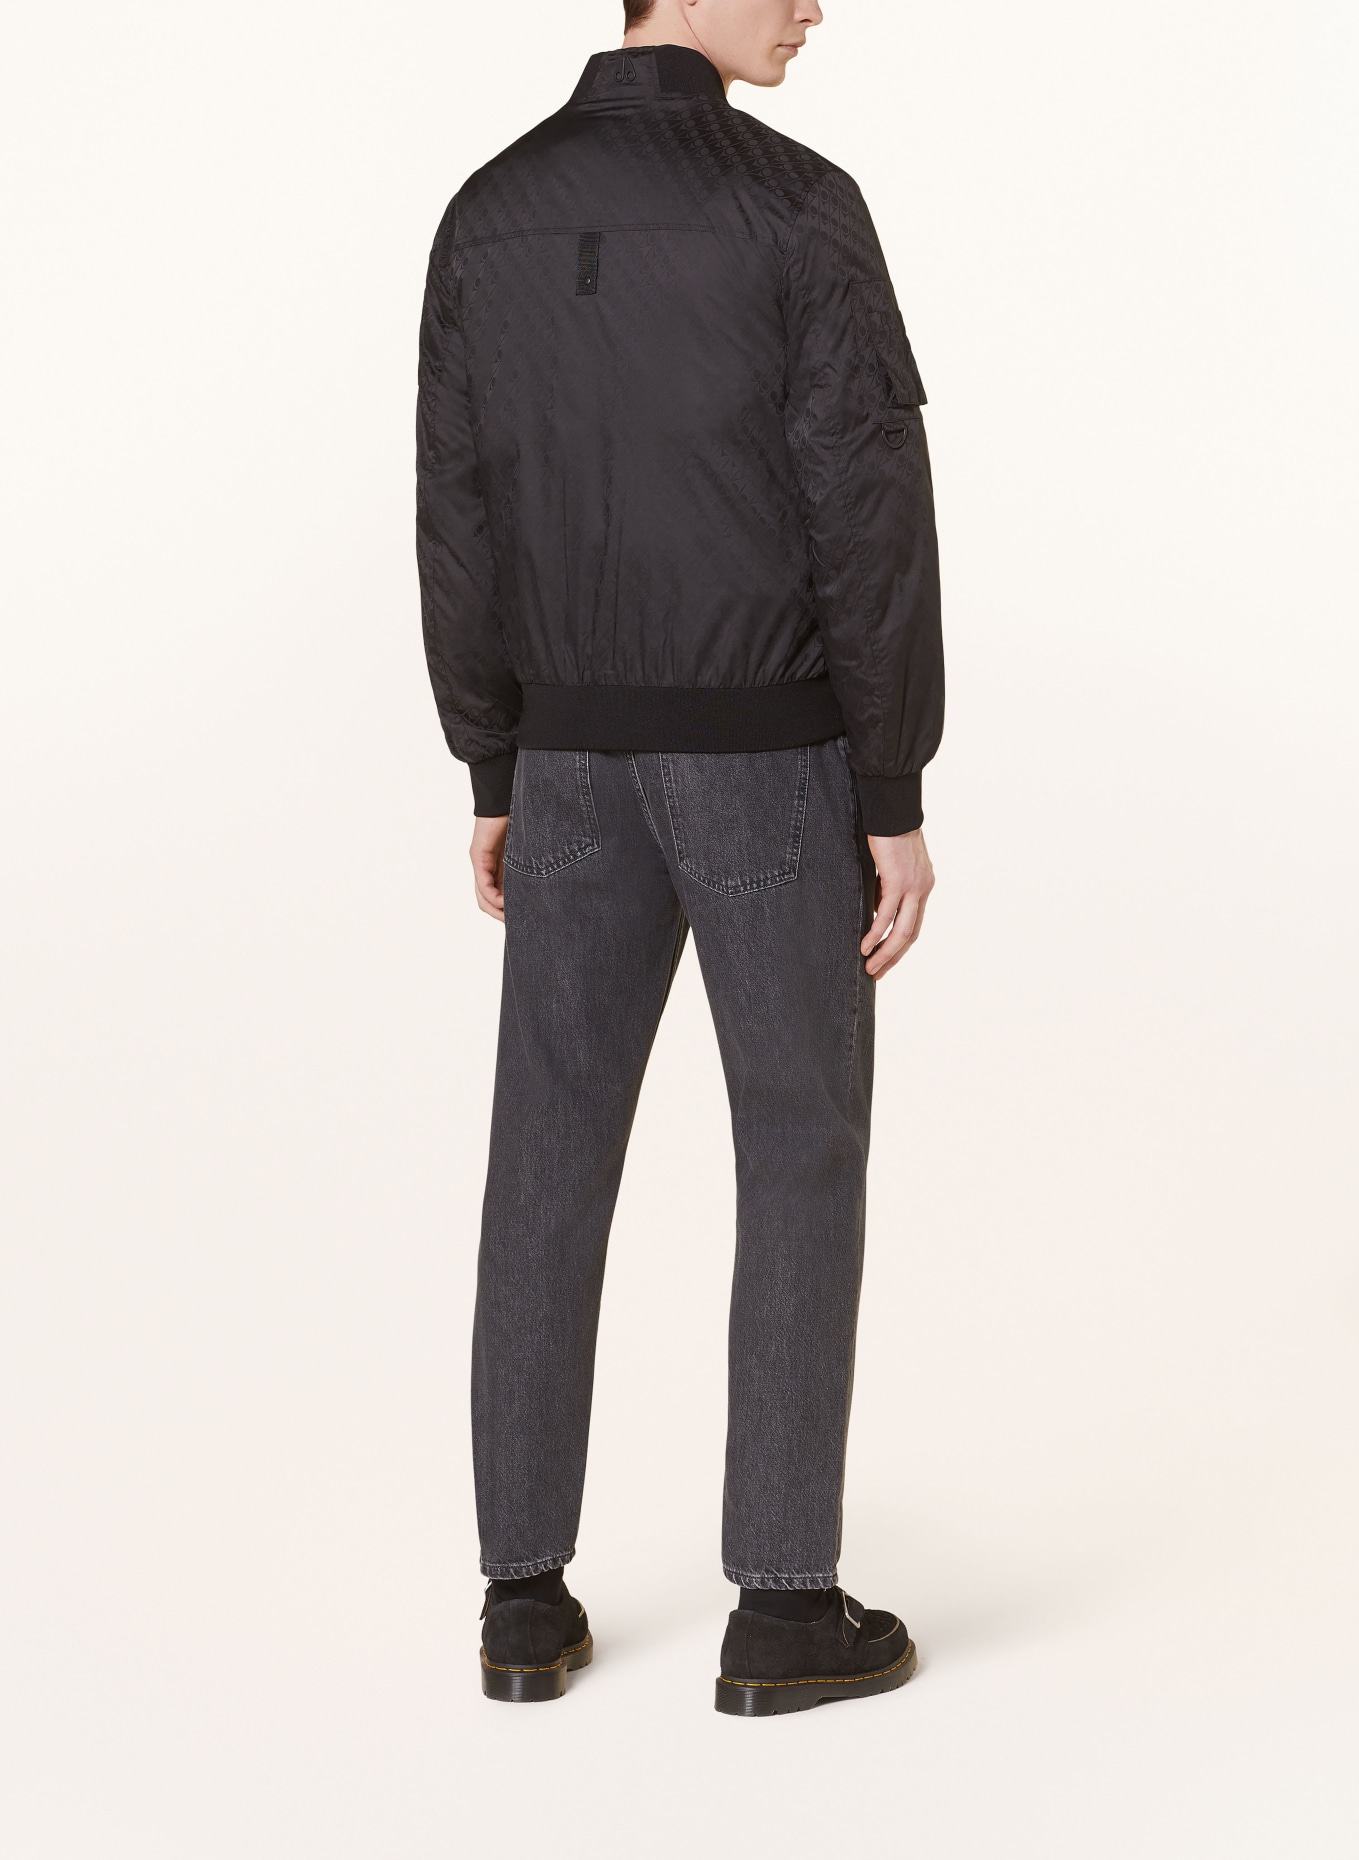 MOOSE KNUCKLES Bomber jacket COURVILLE, Color: BLACK (Image 3)